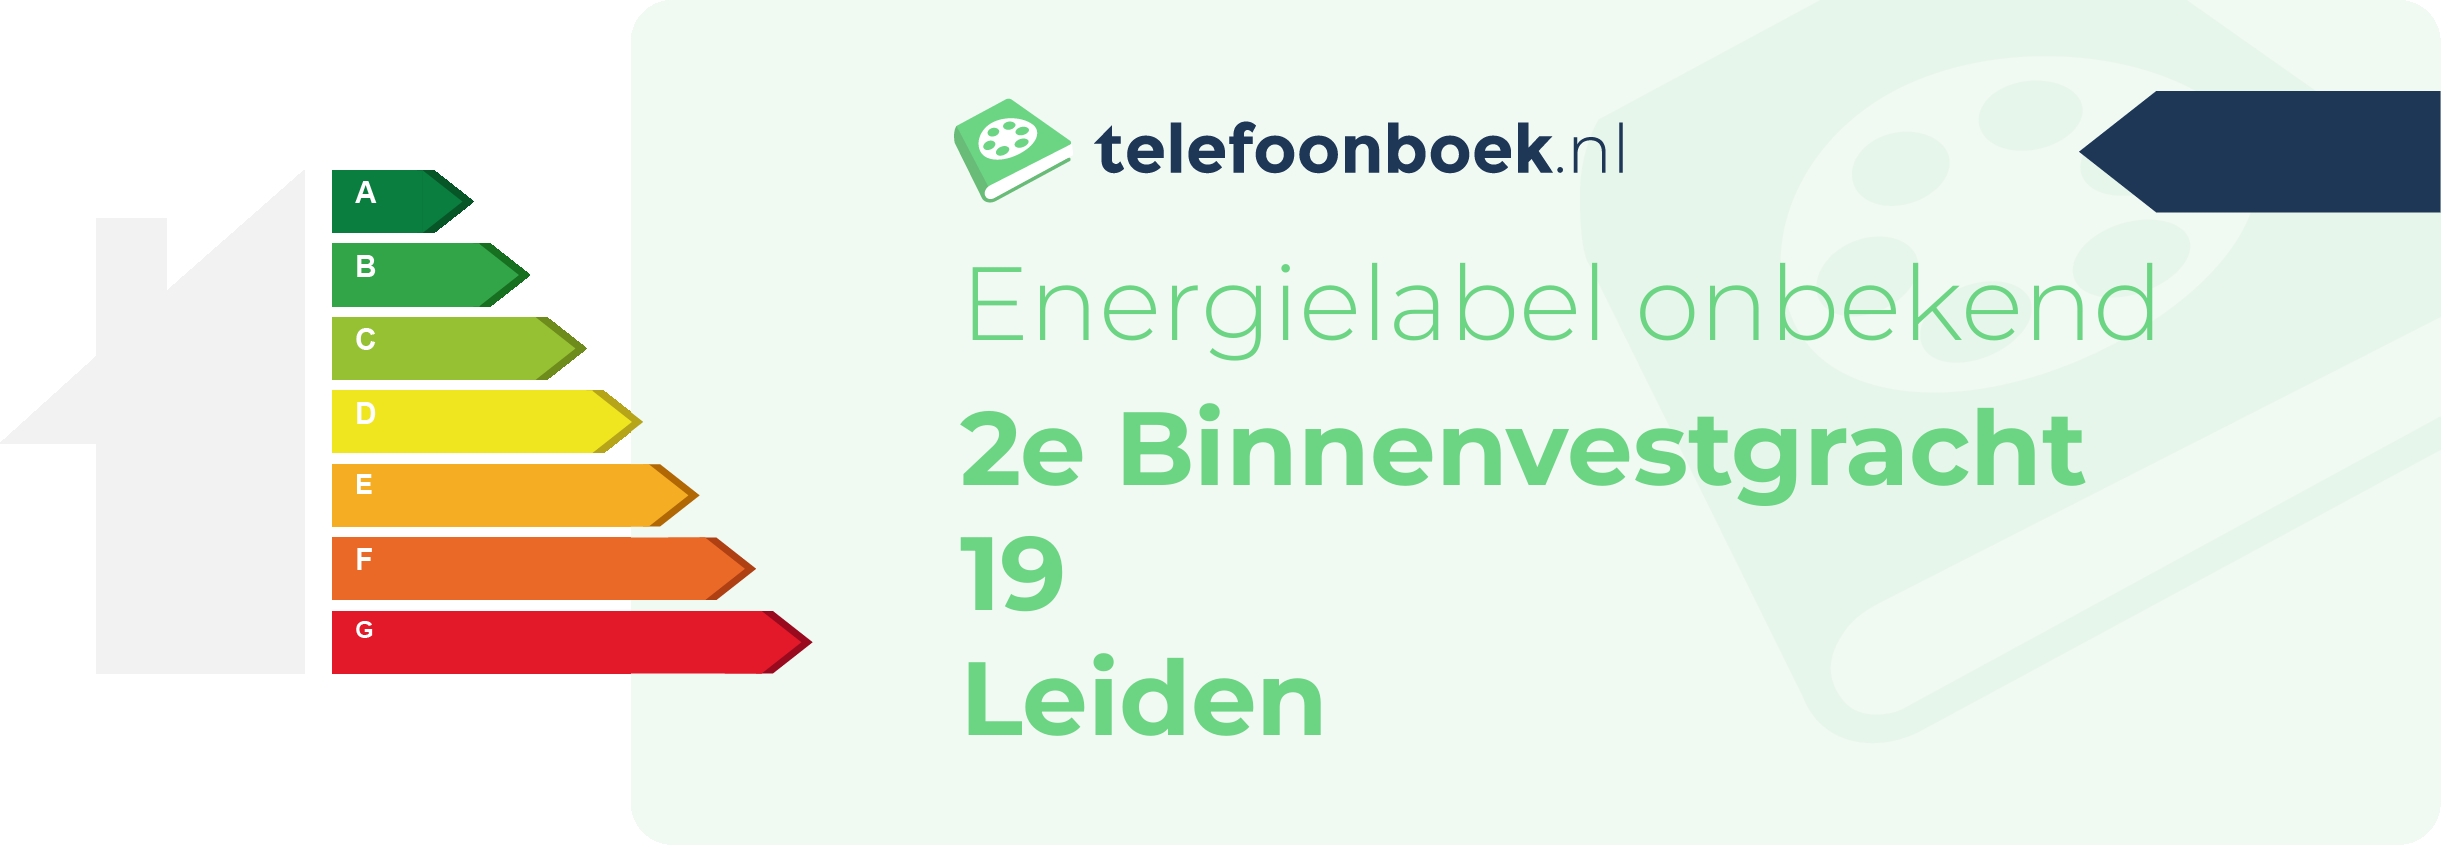 Energielabel 2e Binnenvestgracht 19 Leiden